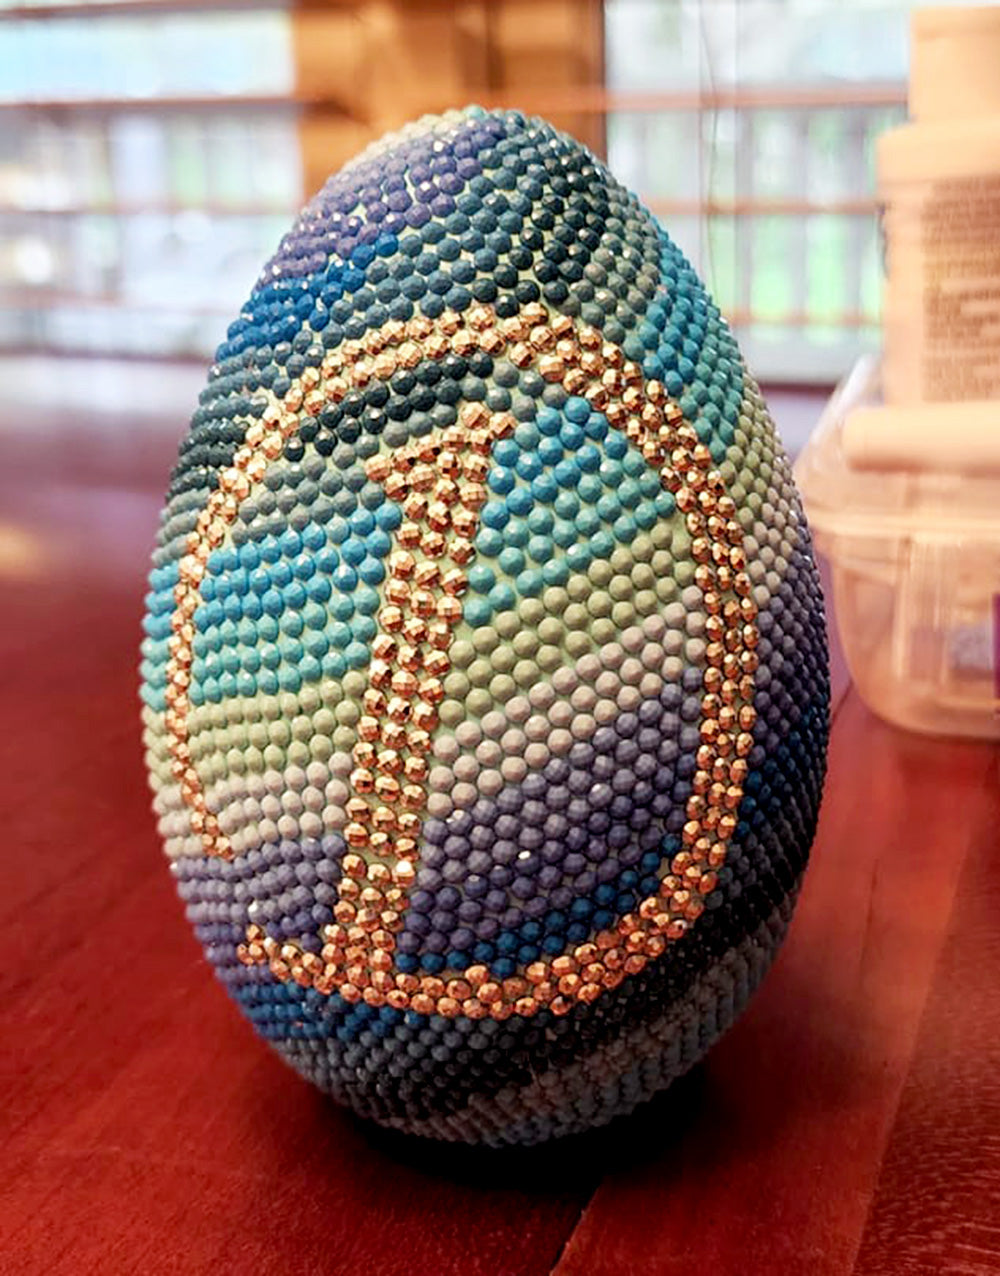 Easter egg covered in diamonds 